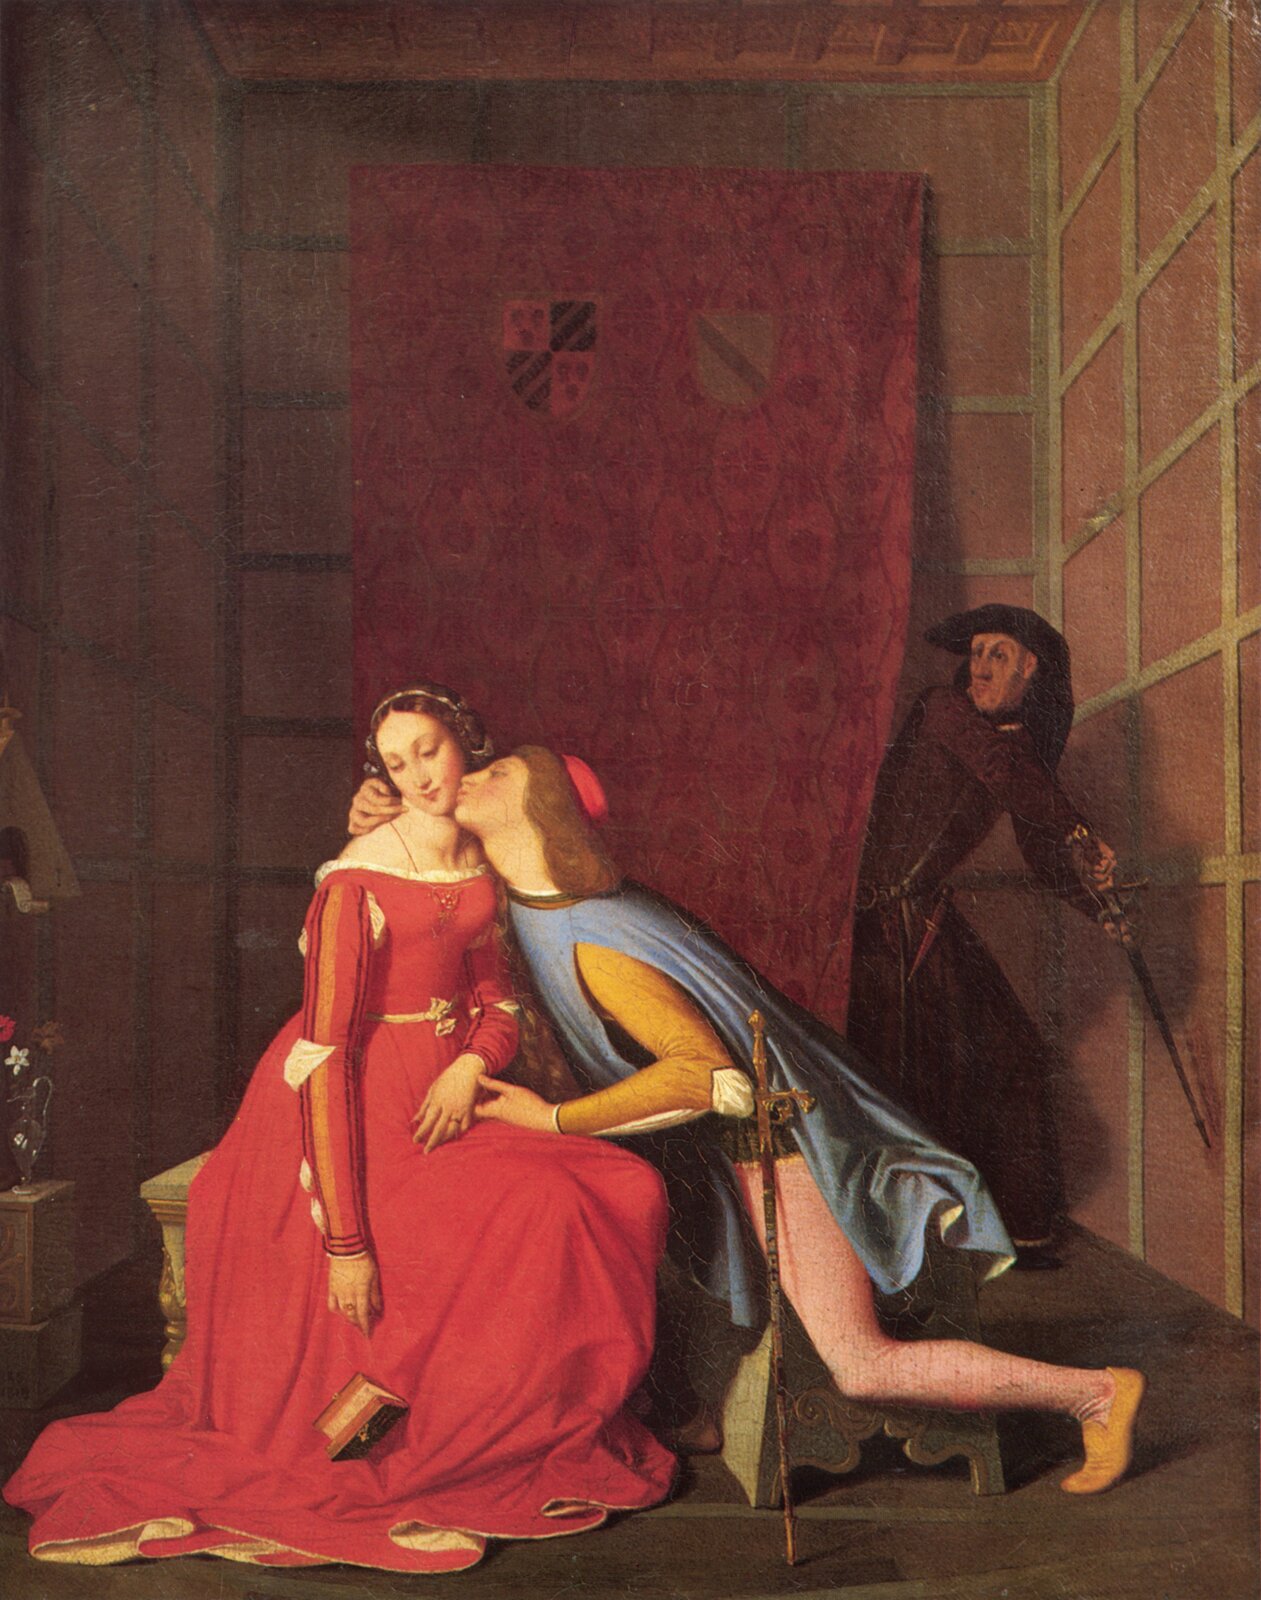 Ilustracja przedstawia obraz Jeana Auguste Dominique Ingresa „Francesca da Rimini i Paolo Malatesta”. Na obrazie widzimy mężczyznę całującego kobietę w policzek. Za postaciami wisi na ścianie kotara, zza której wychodzi mężczyzna z mieczem uniesionym w górę. Postacie na obrazie mają stroje zgodne z epoką.